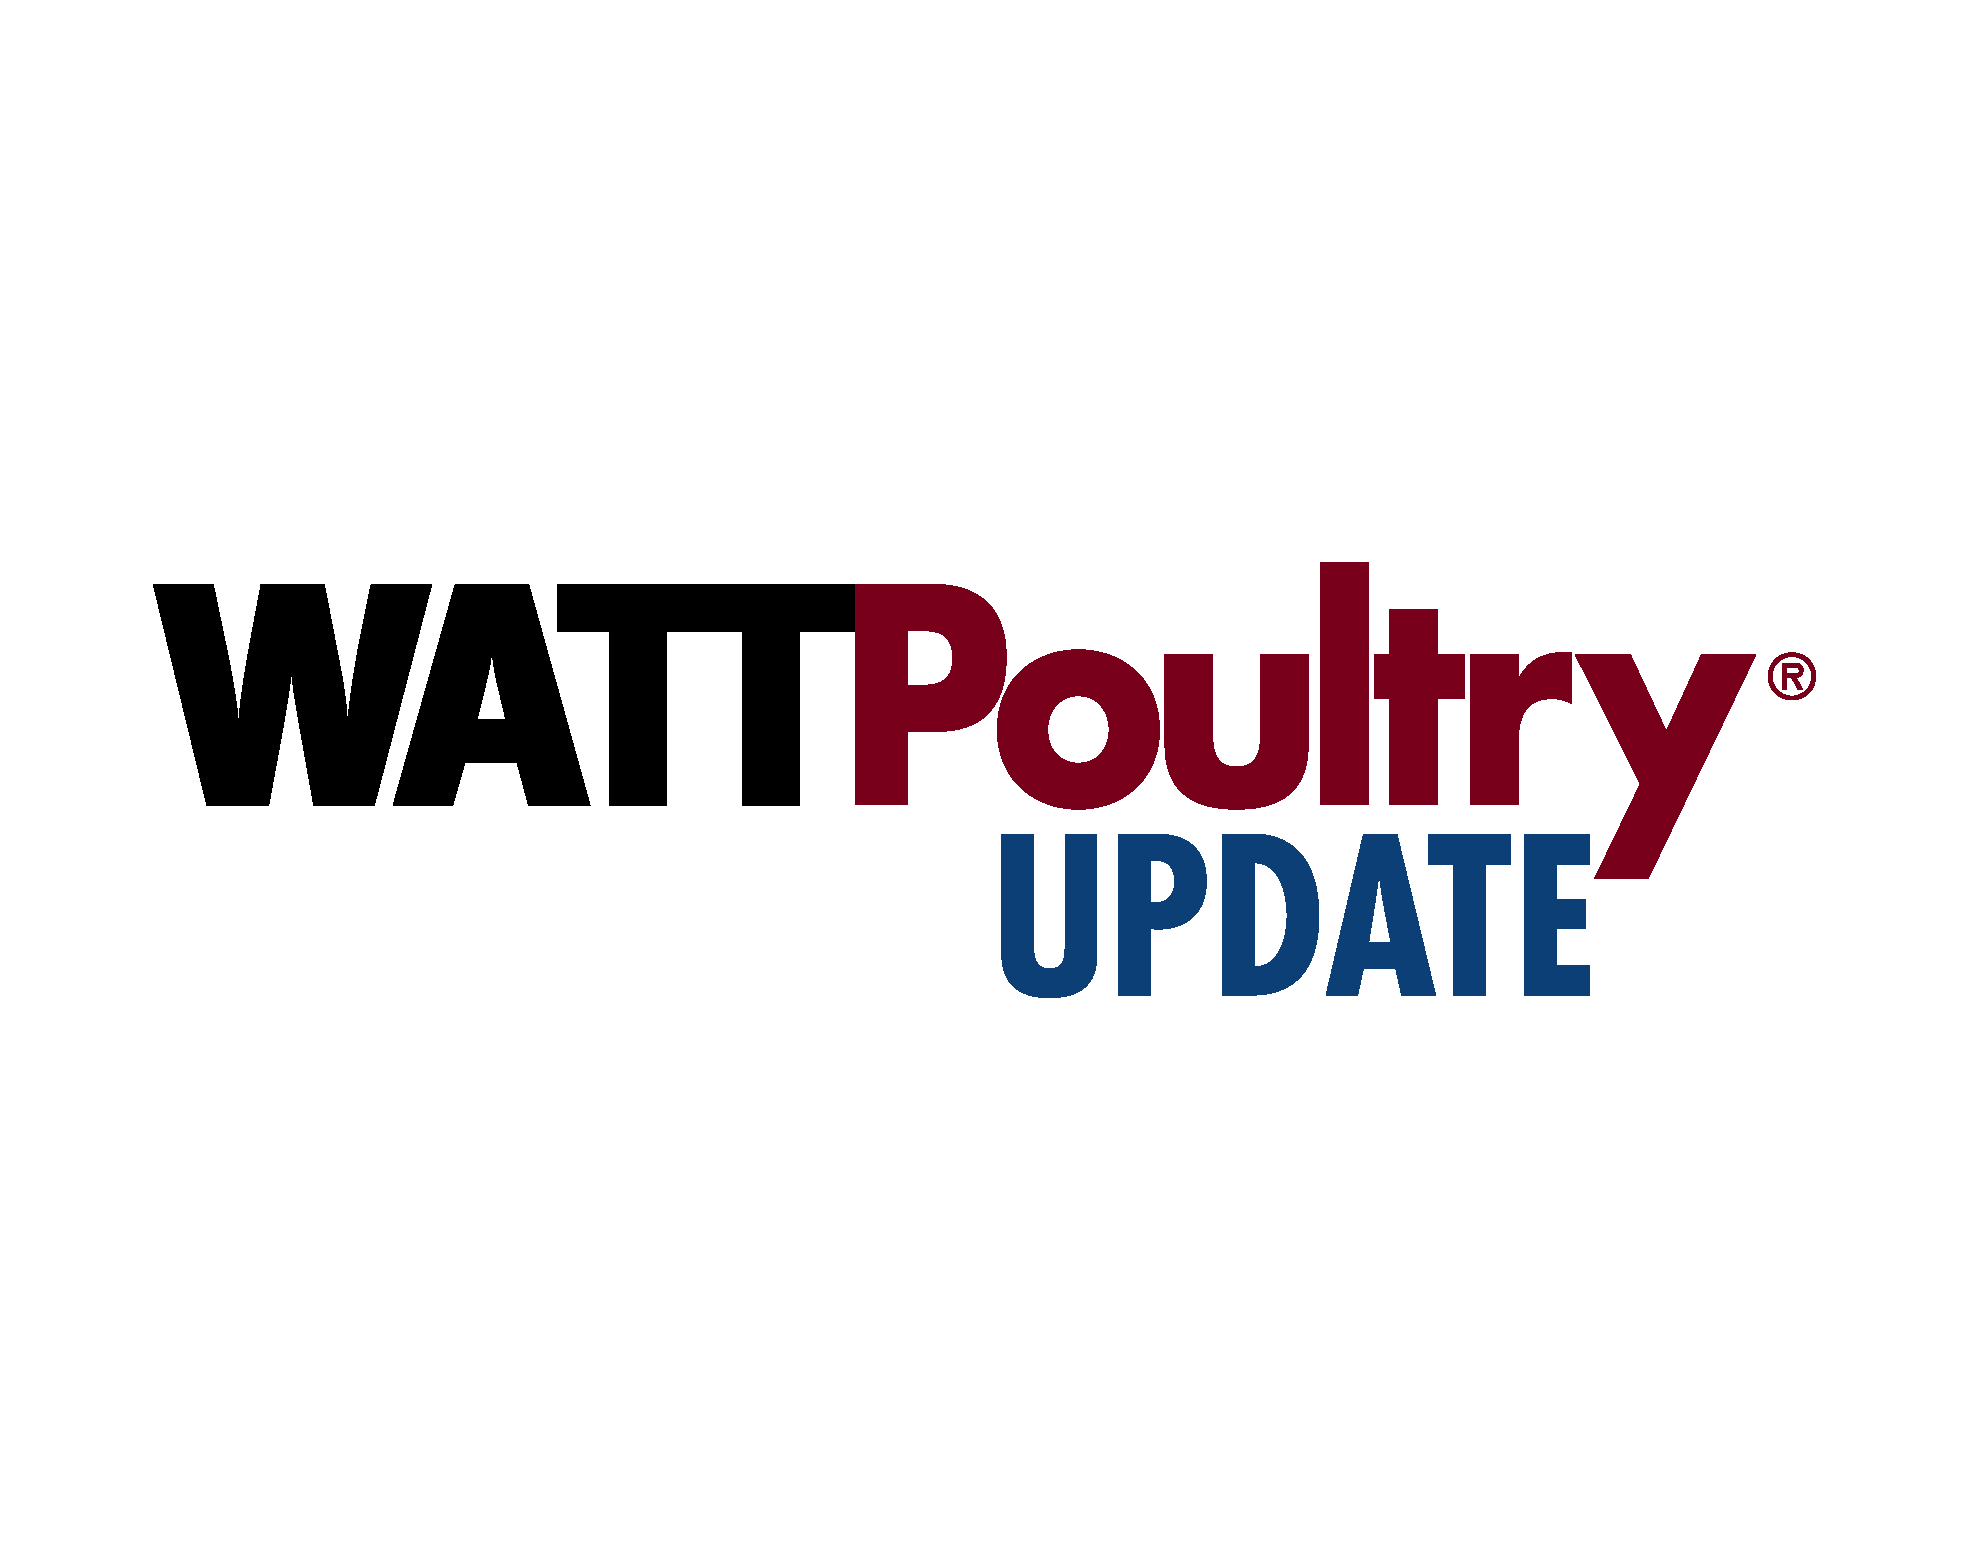 WATT Poultry Update